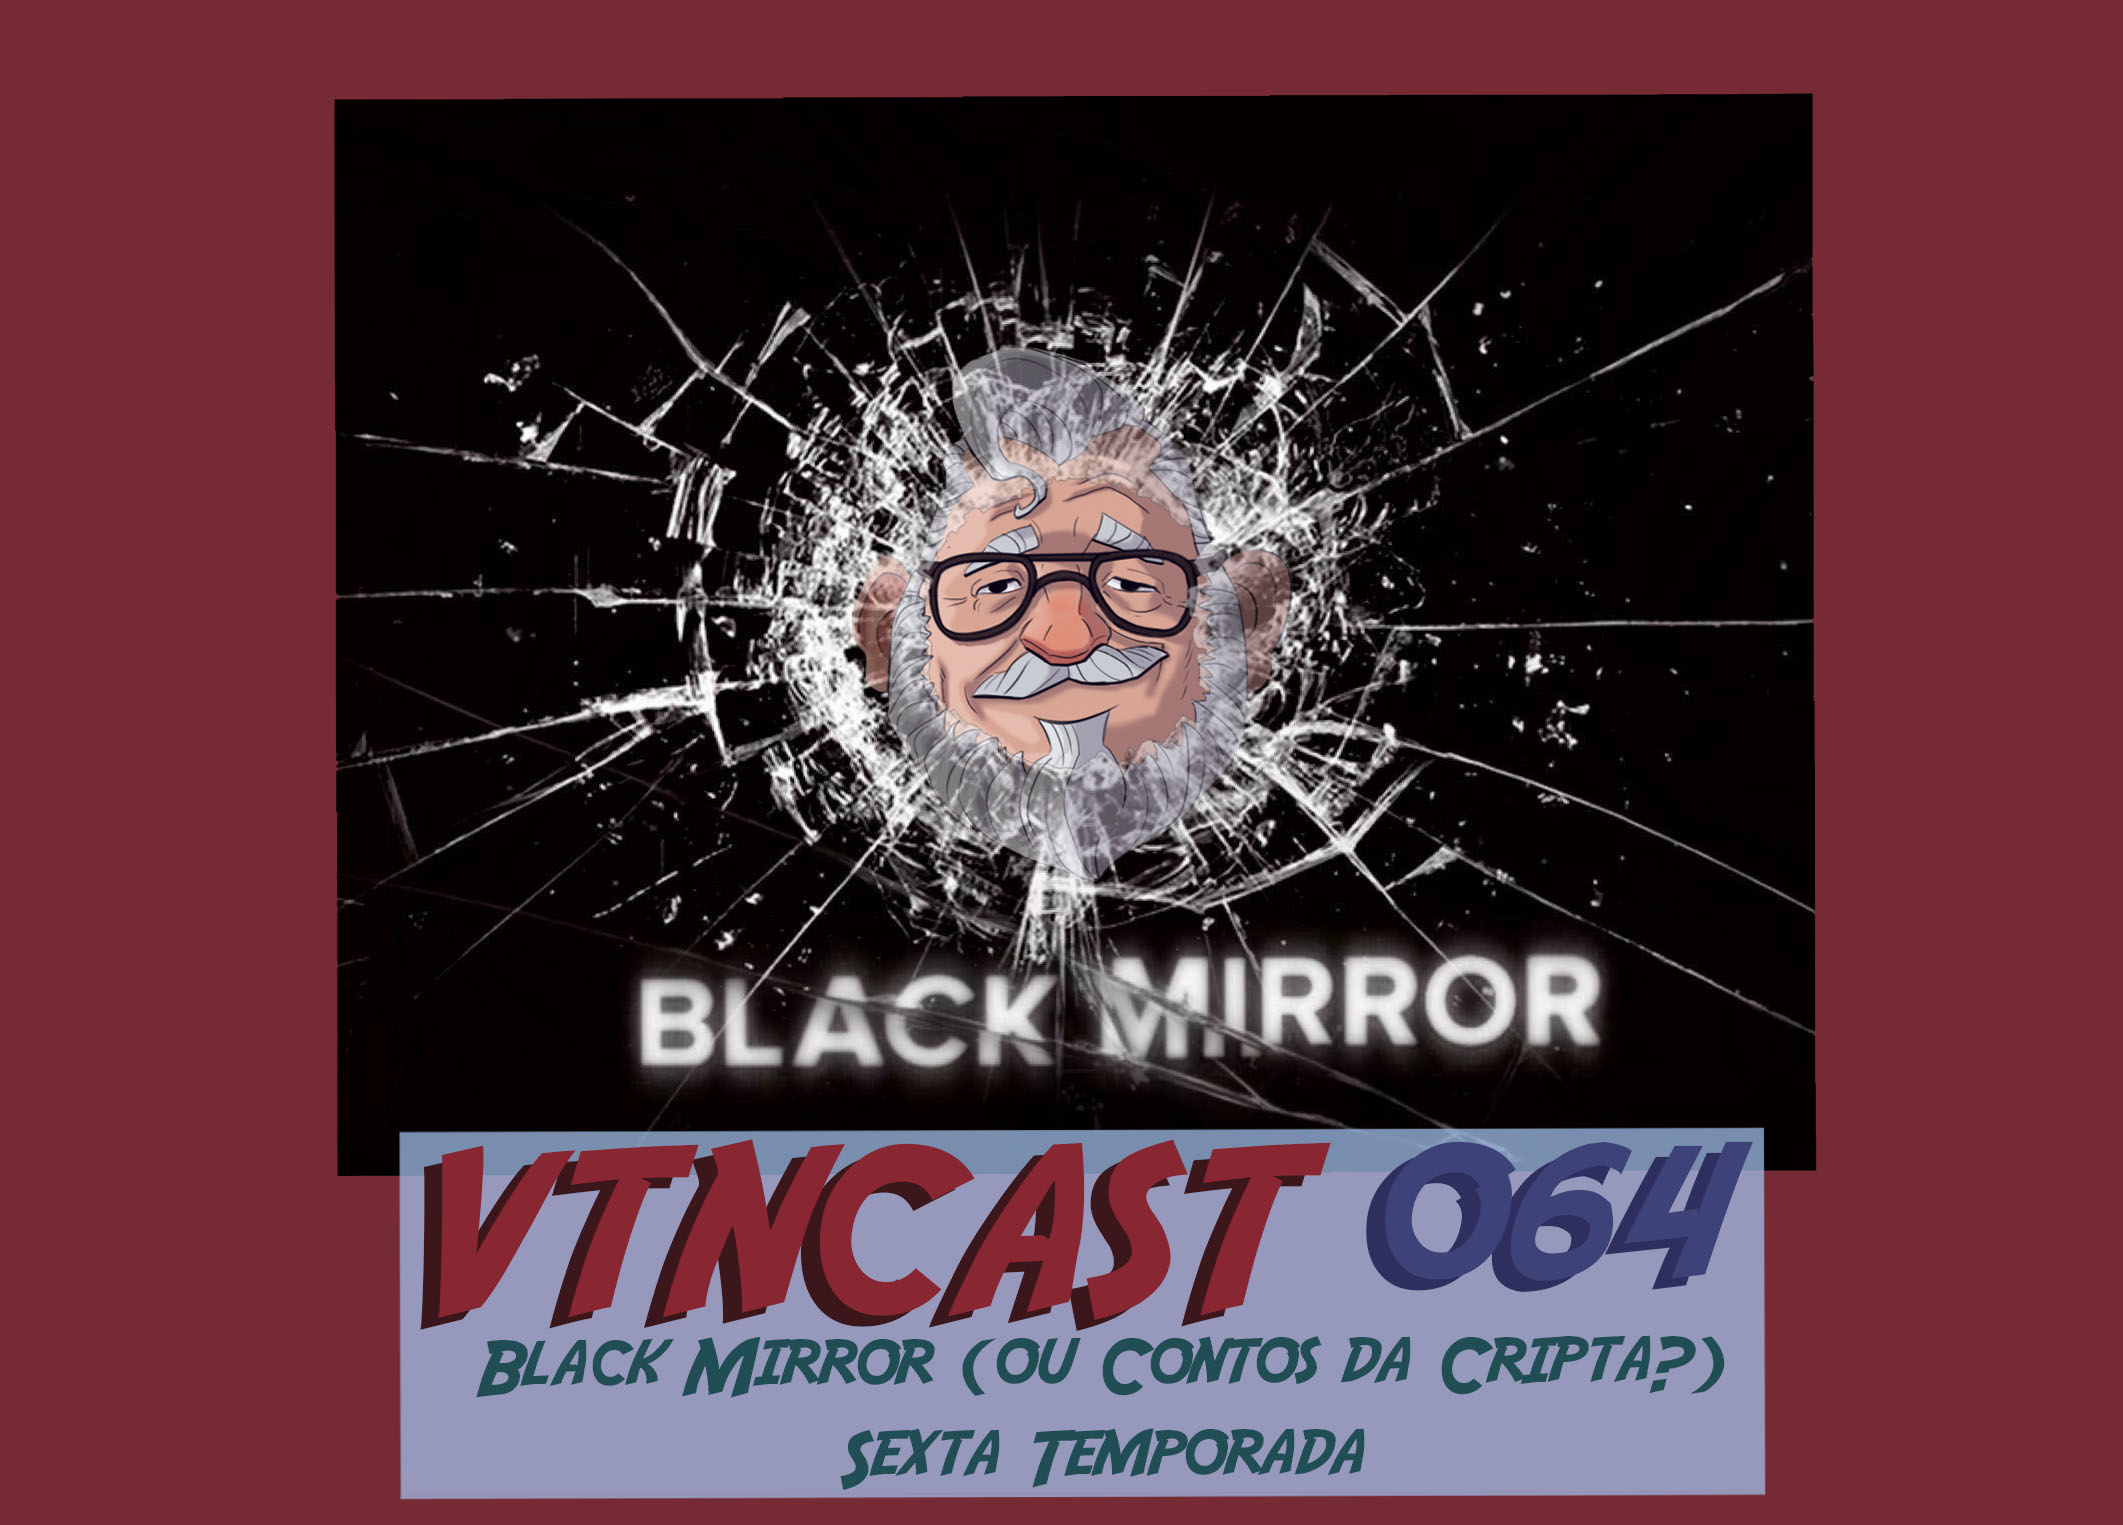 VTNCast 064 – Black Mirror (ou Contos da Cripta?) Sexta Temporada post thumbnail image